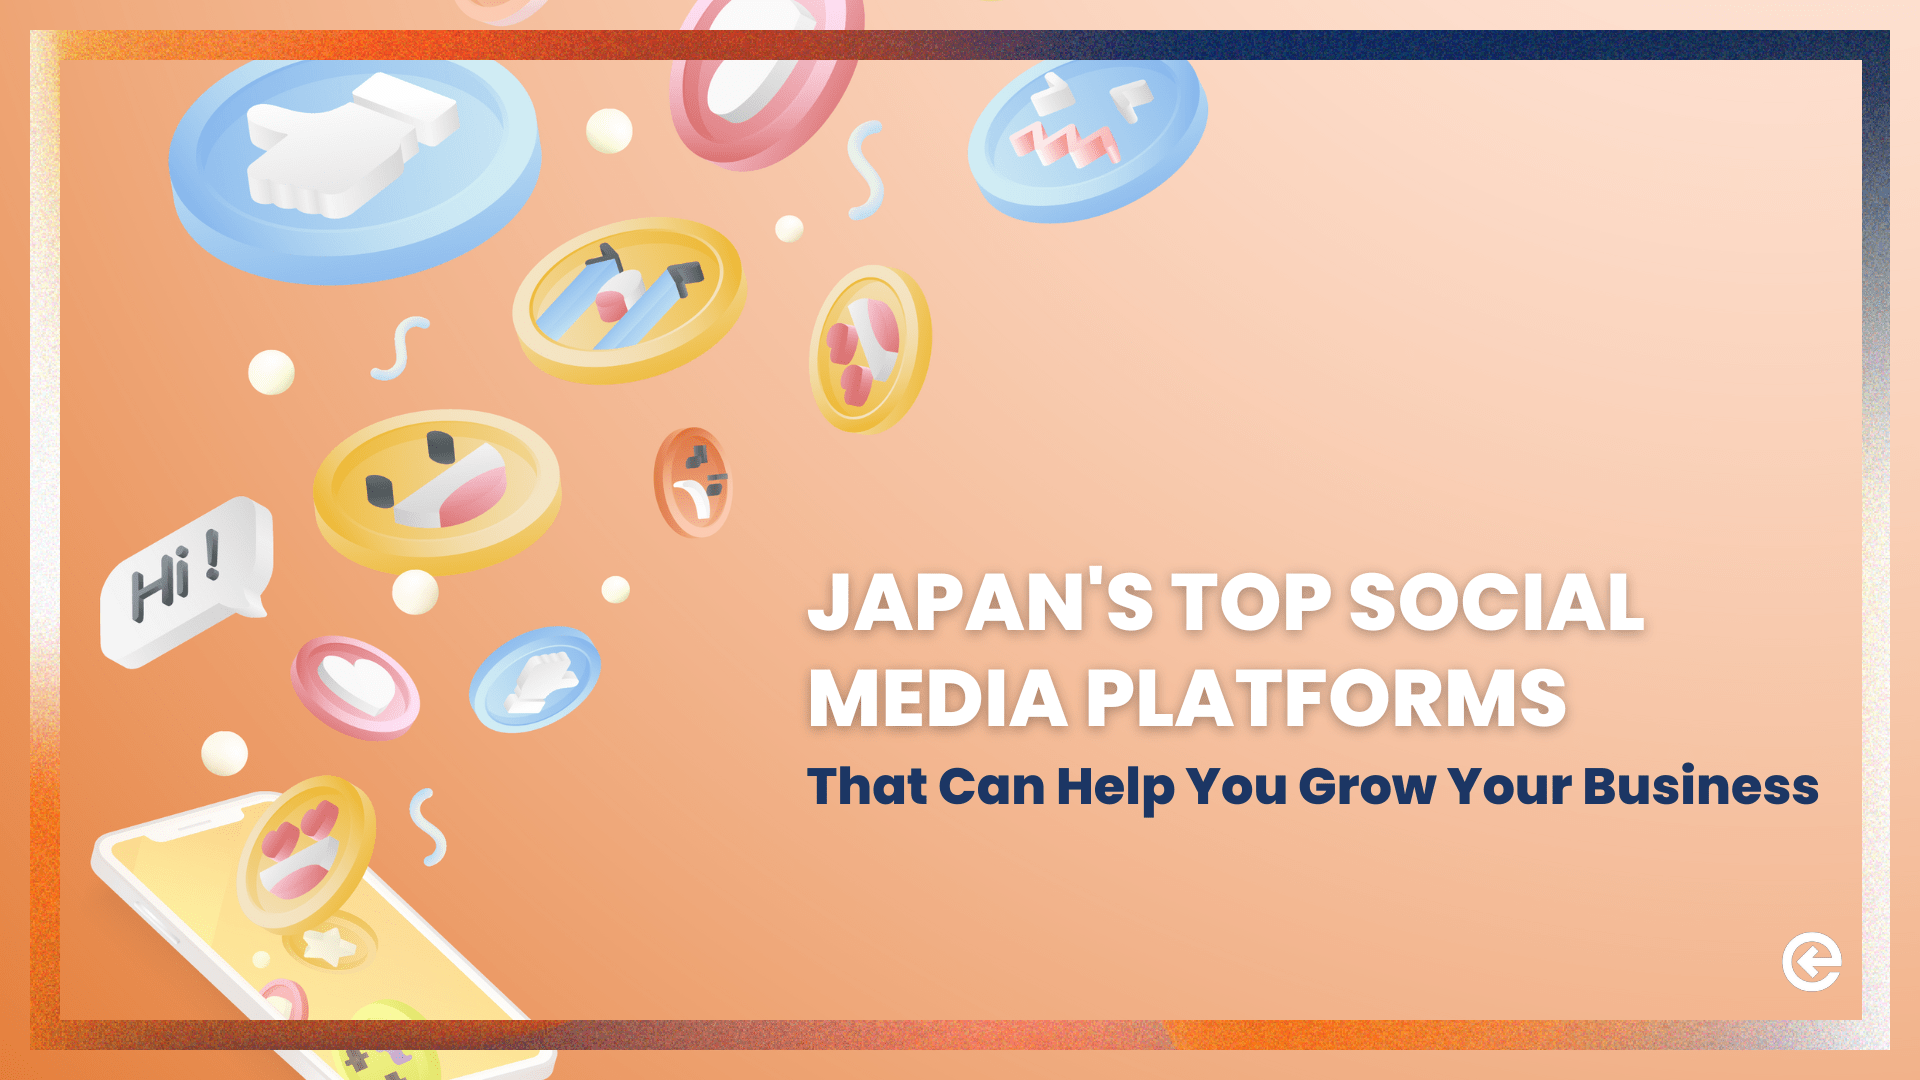 Las principales plataformas de medios sociales de Japón que pueden ayudarle a hacer crecer su marca